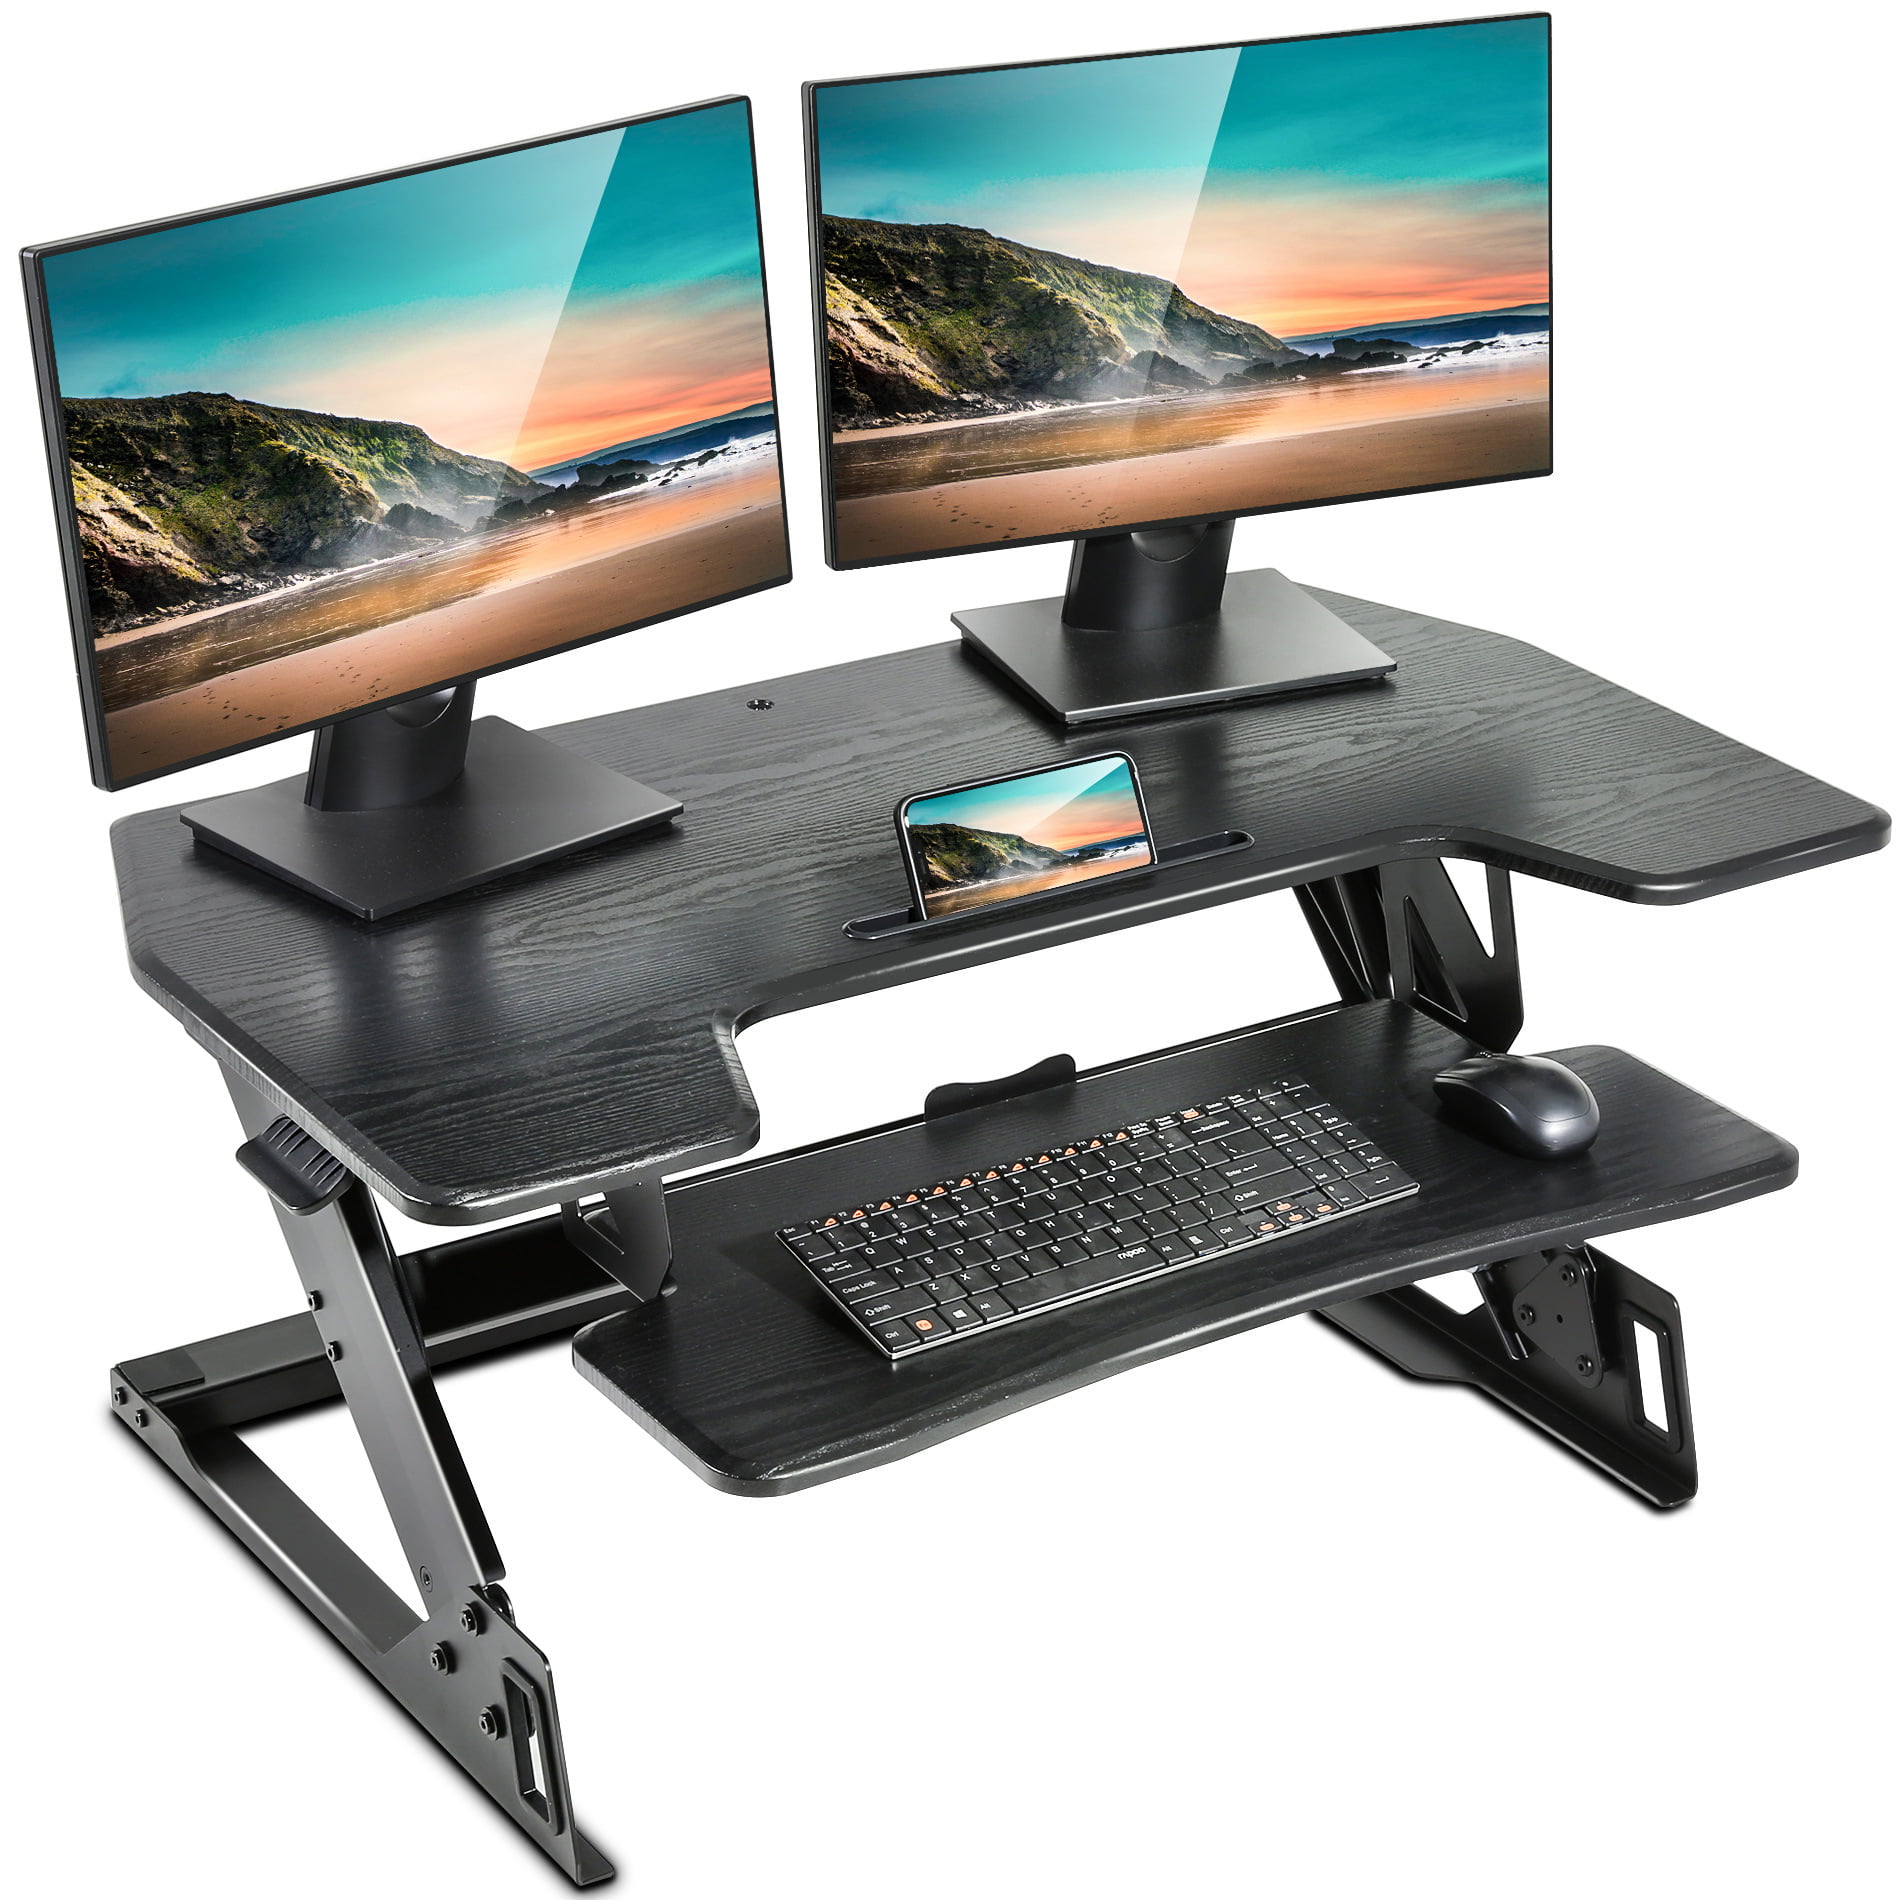 ergonomic Best Standing Desk Converter For Laptop And Monitor for Streamer